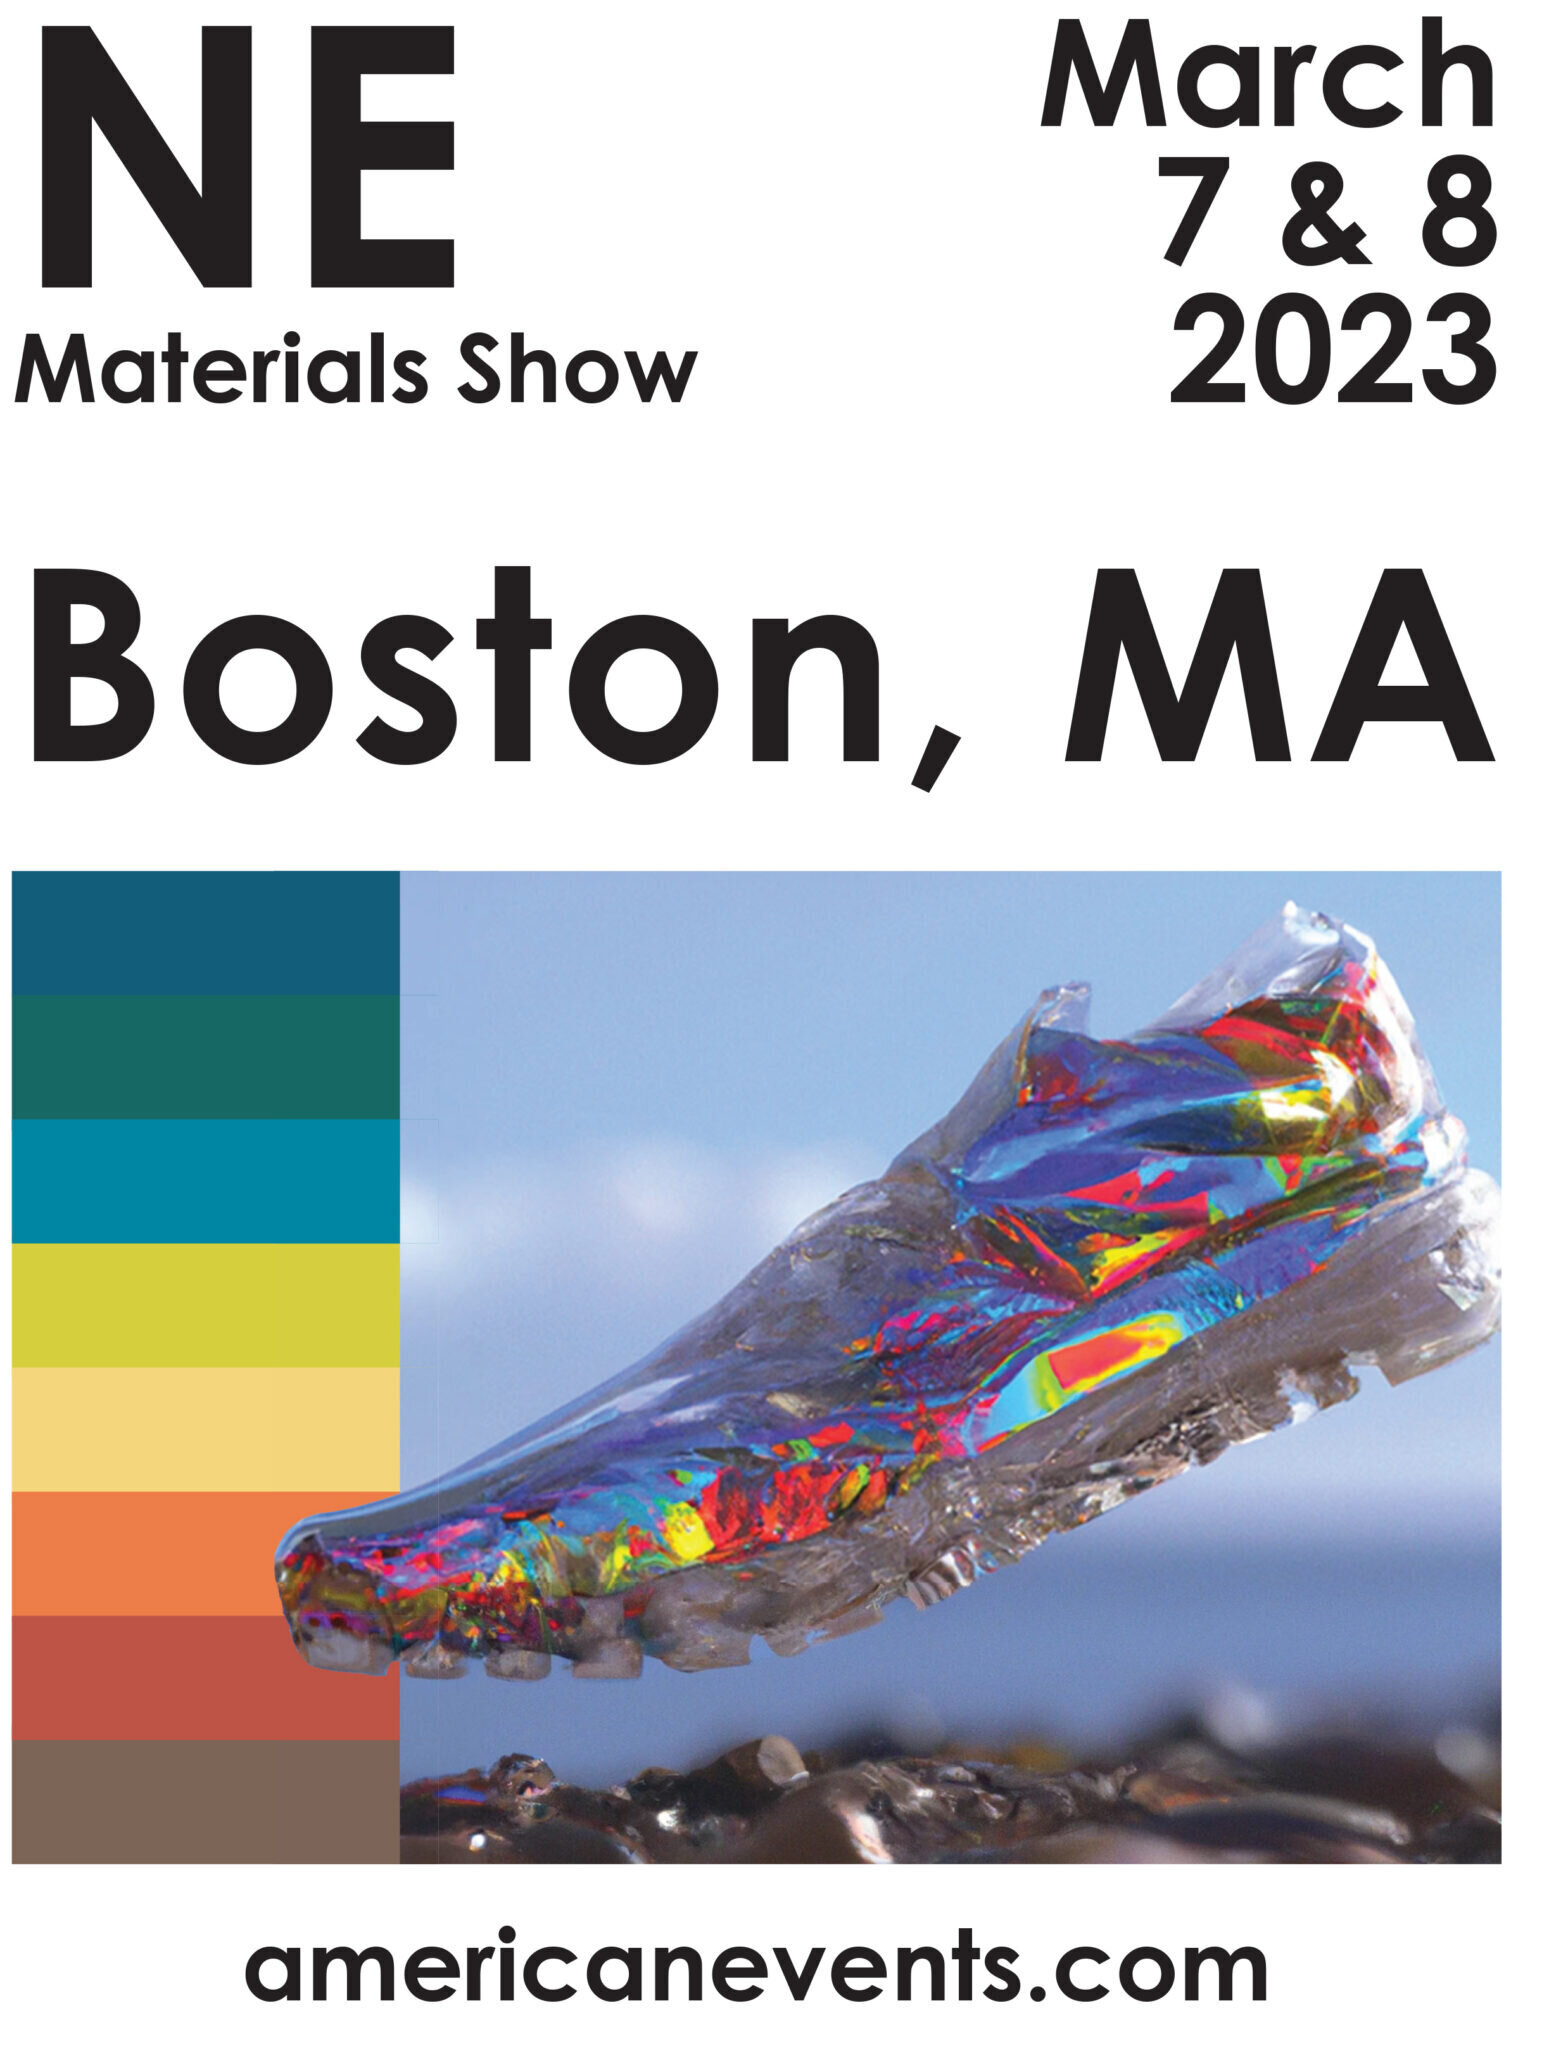 The NE Materials Show – March 7 & 8 in Boston, MA